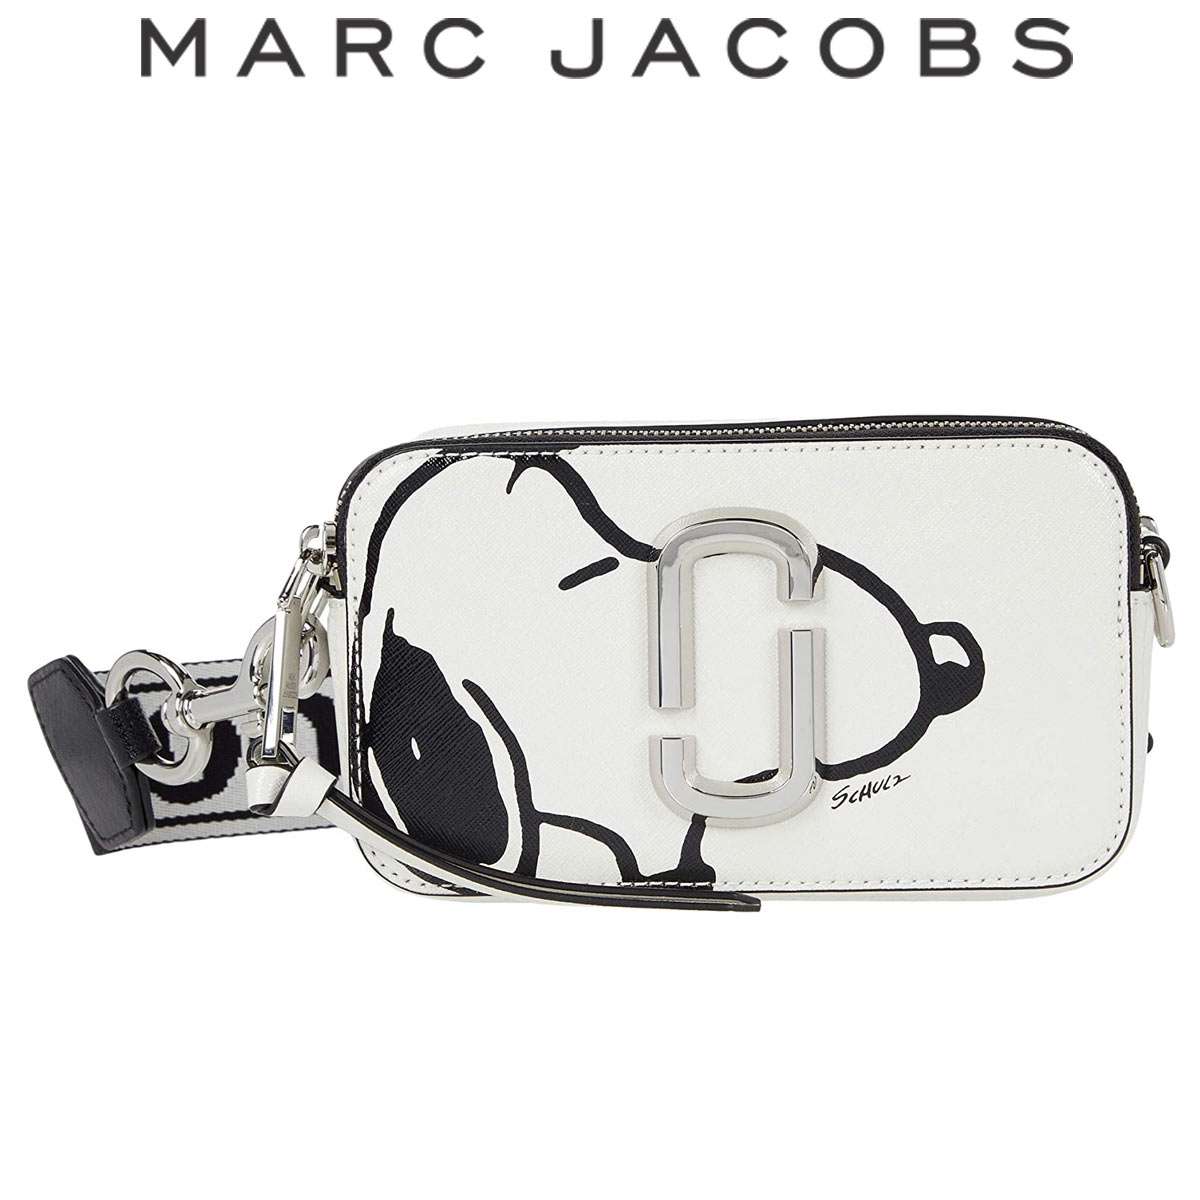 マークジェイコブス バッグ スヌーピー ショルダーバッグ レディース 人気 斜めがけ ブランド 送料無料 Marc Jacobs 通販 